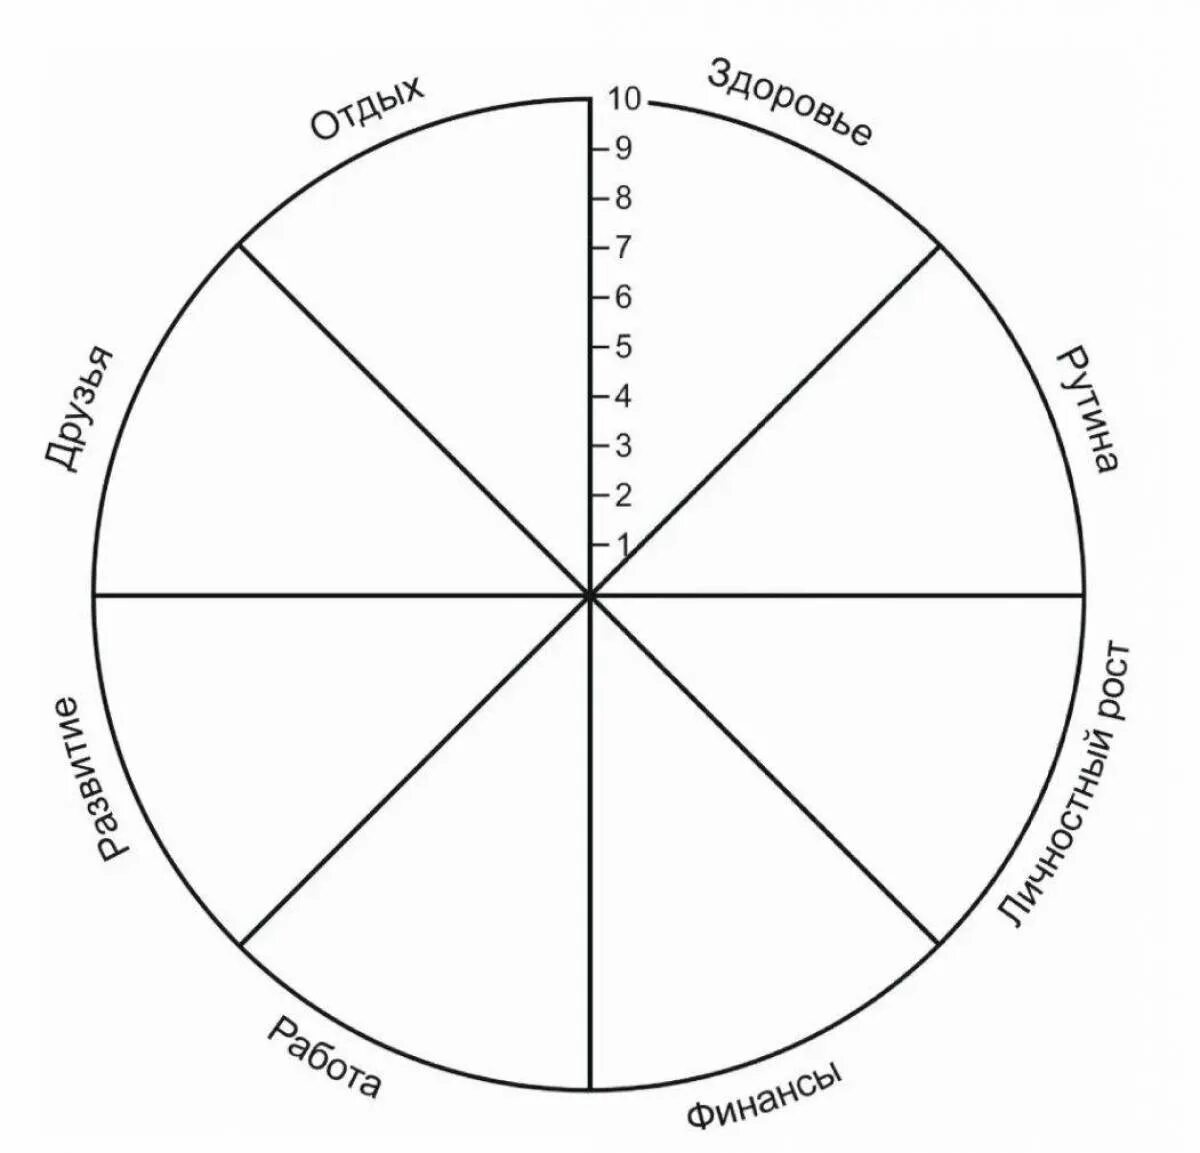 Круг времени жизни. Колесо жизненного баланса 8 сфер. Схема колеса жизненного баланса. Коле/о жизненного баланса. Колесо жизни, баланс жизни (8 основных сфер).